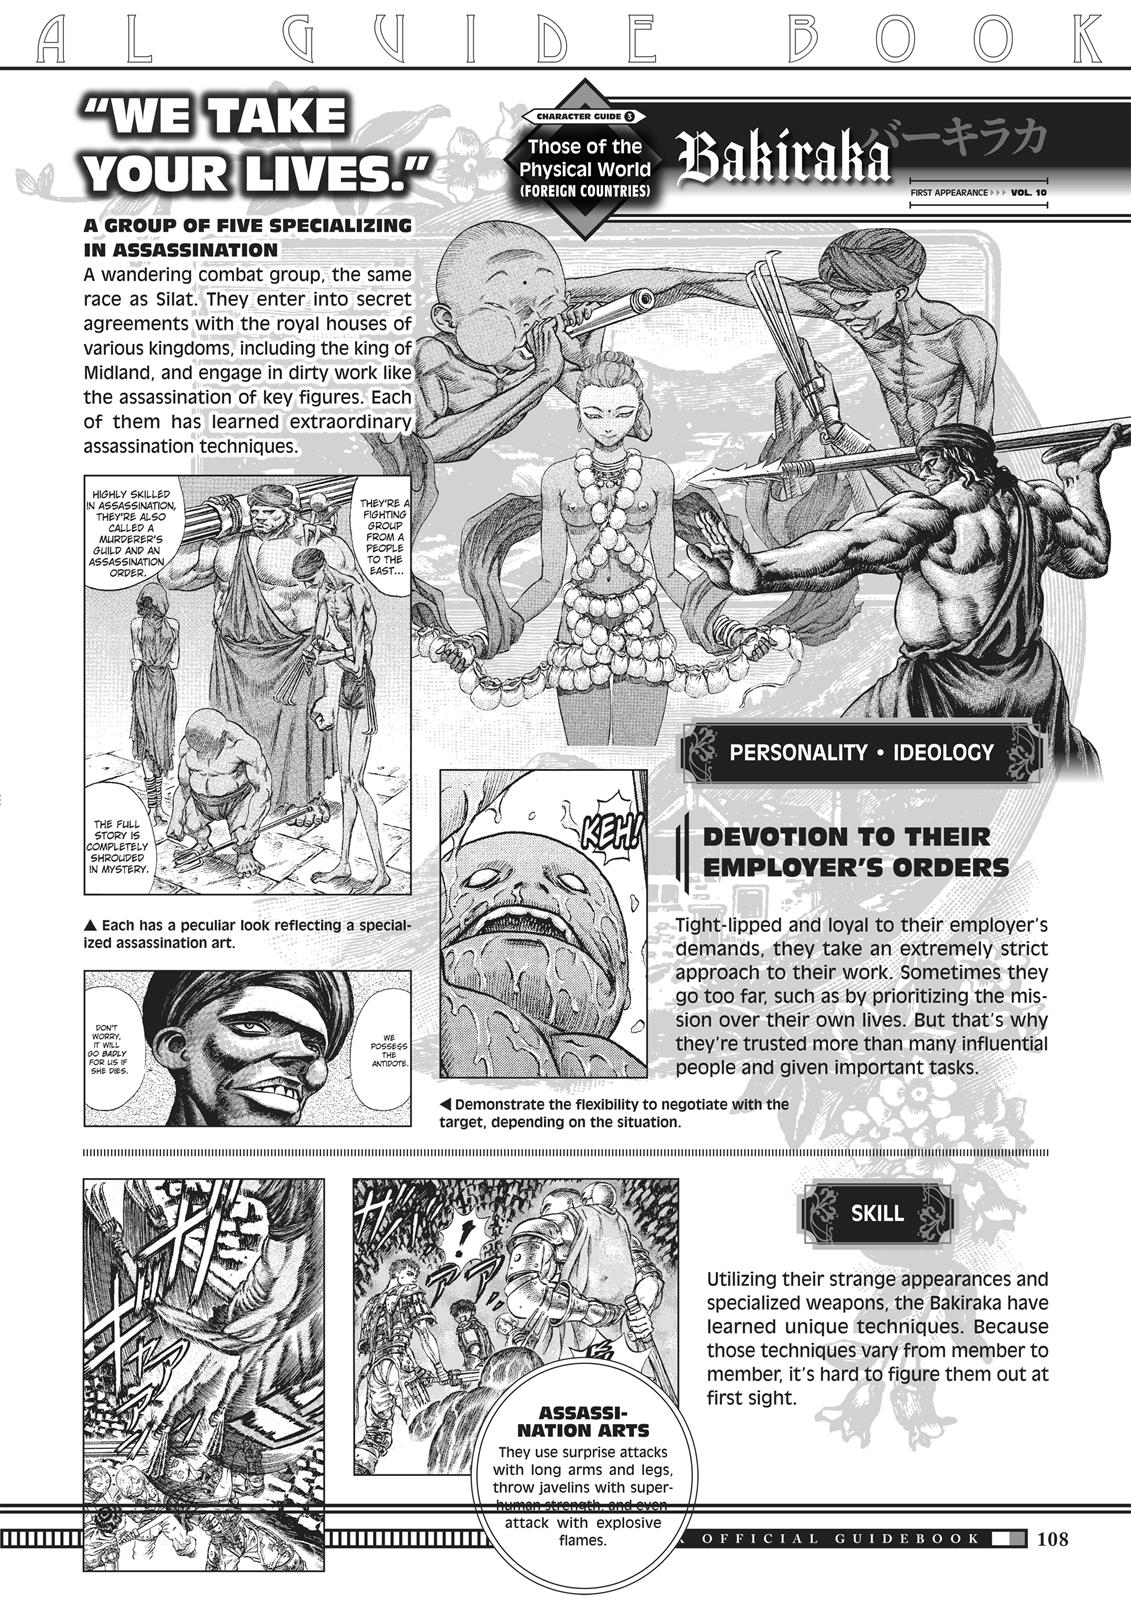 Berserk Manga Chapter 350.5 image 106